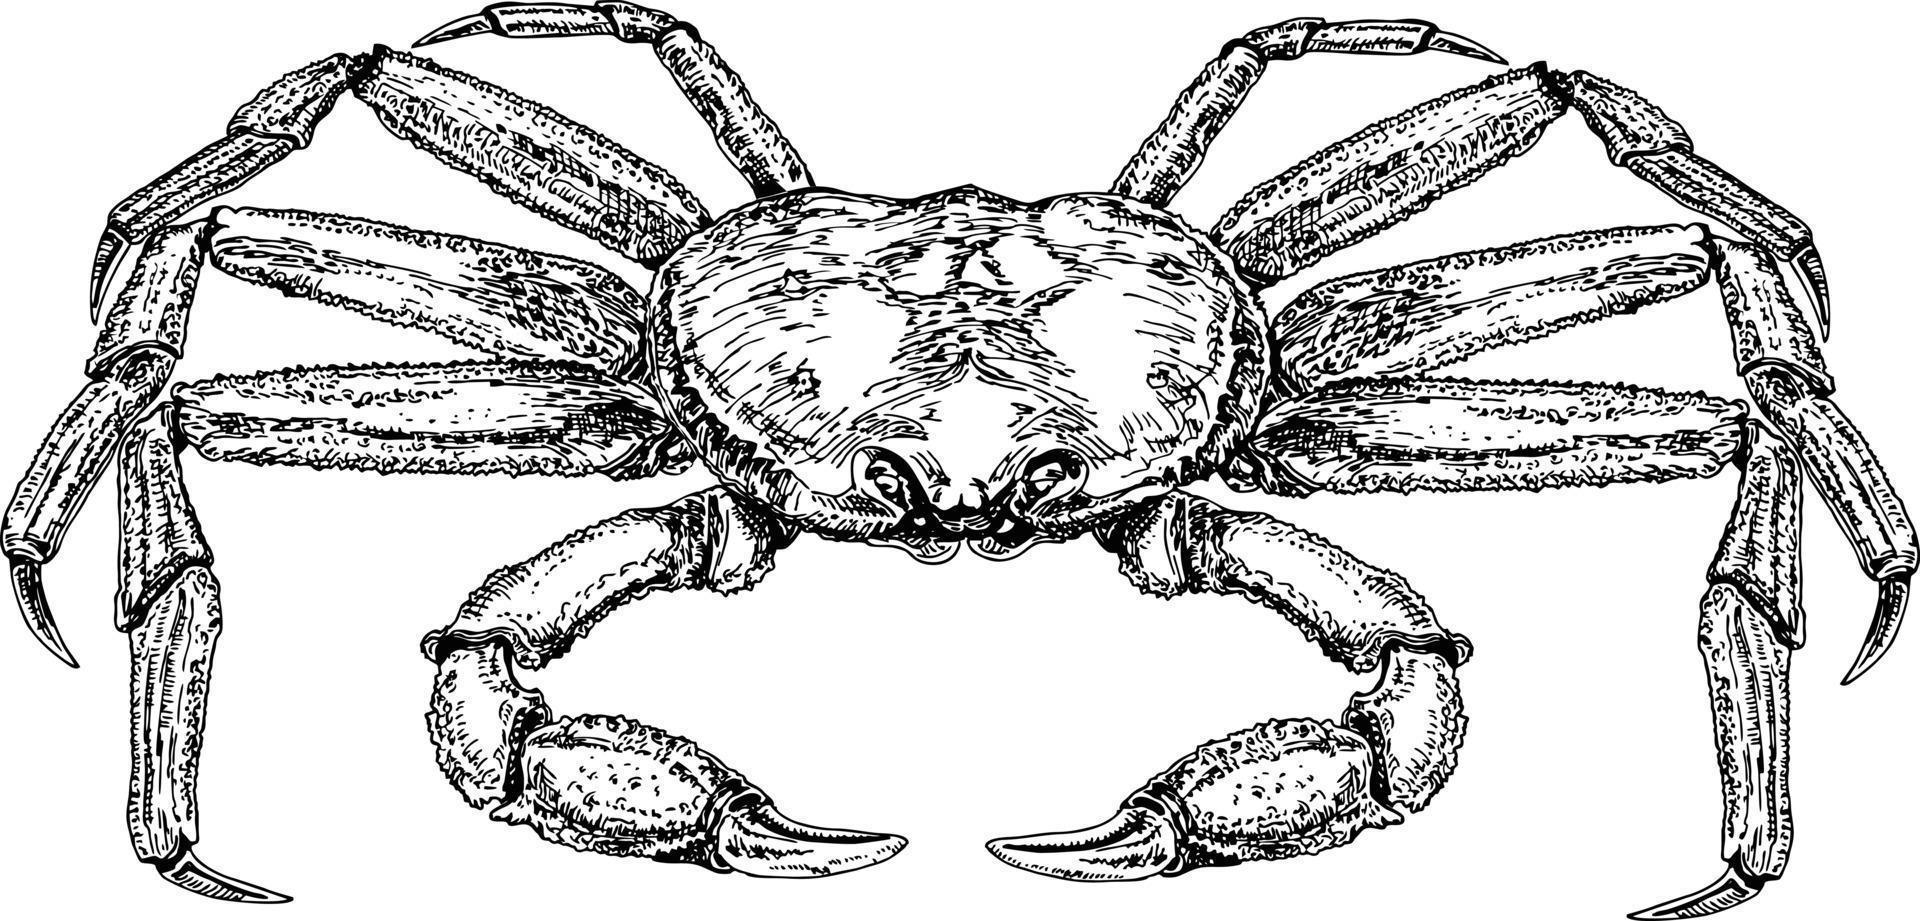 croquis de crabe. dessin de crabe vintage vectoriel. illustration de fruits de mer monochrome dessinés à la main vecteur